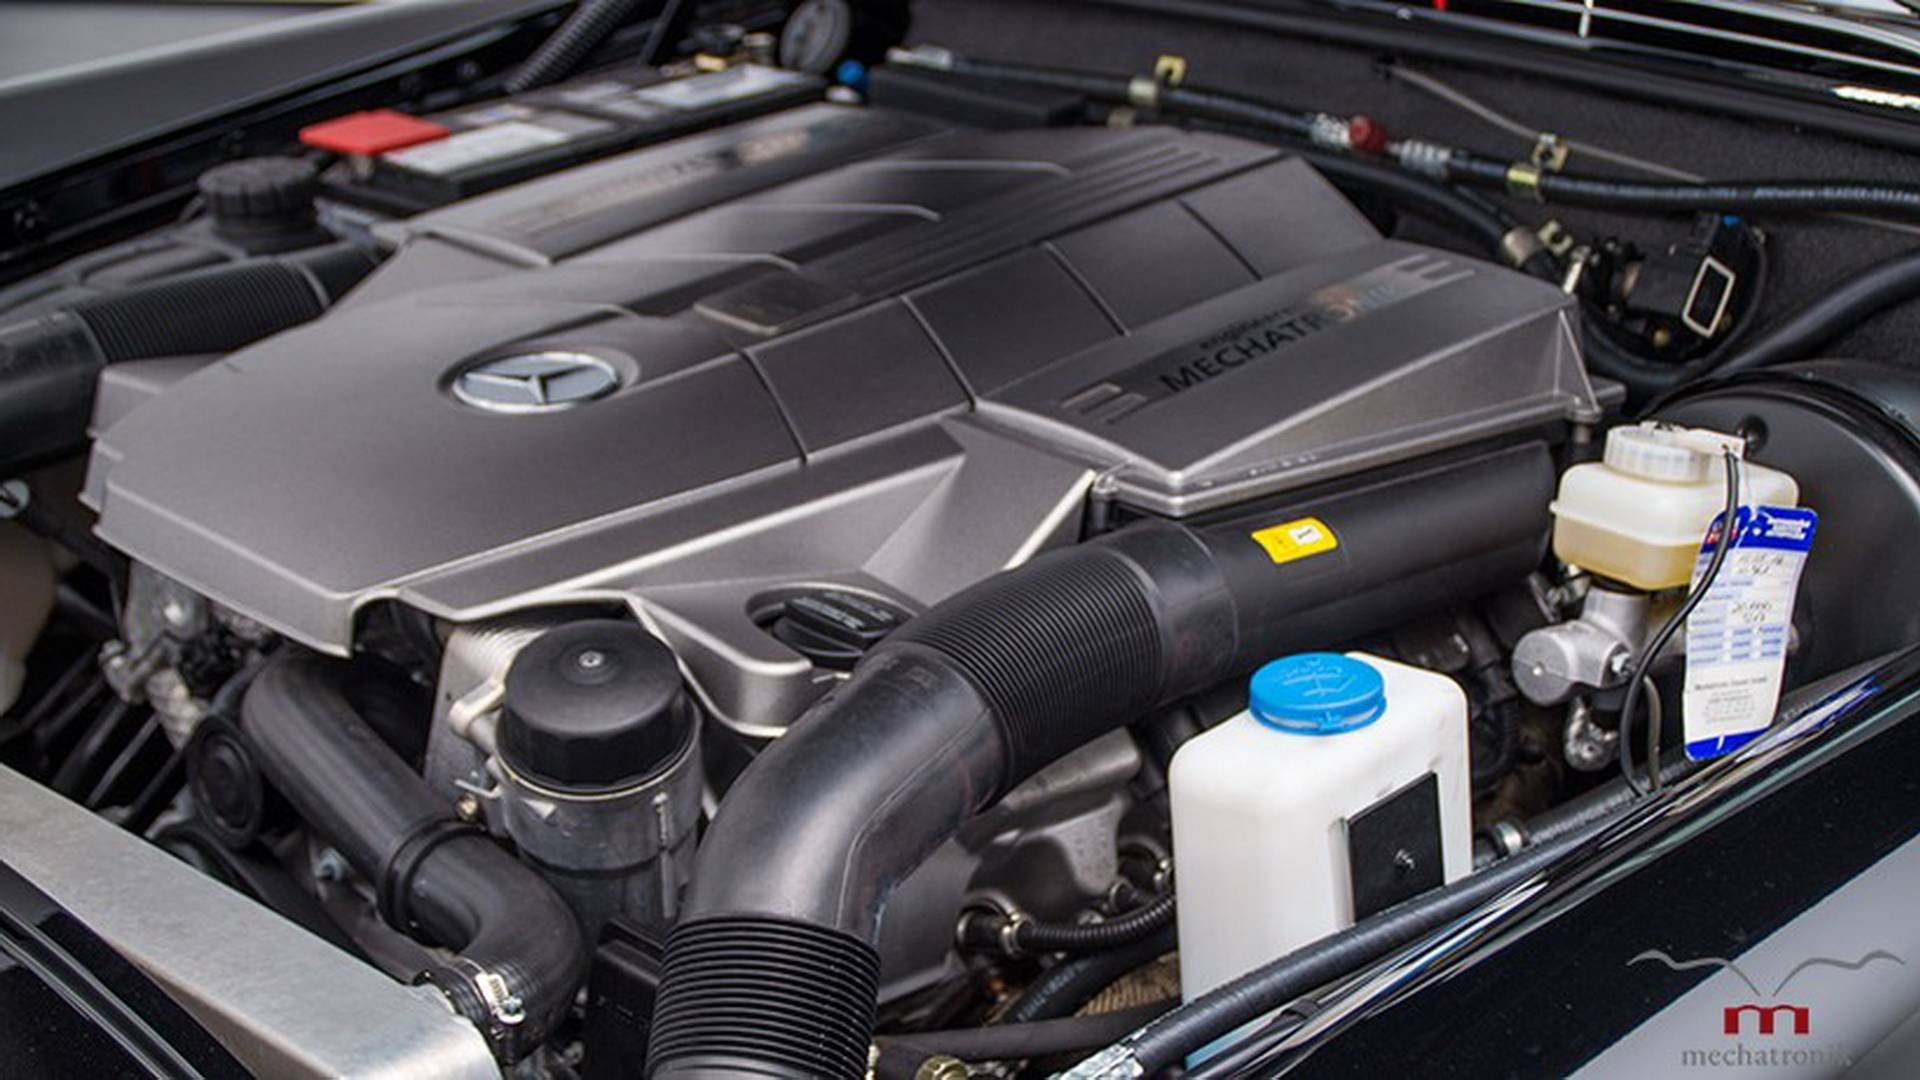 Mercedes-Benz W111 ukrývá pod kapotou moderní 5.5 litrovou V8 z dílny AMG